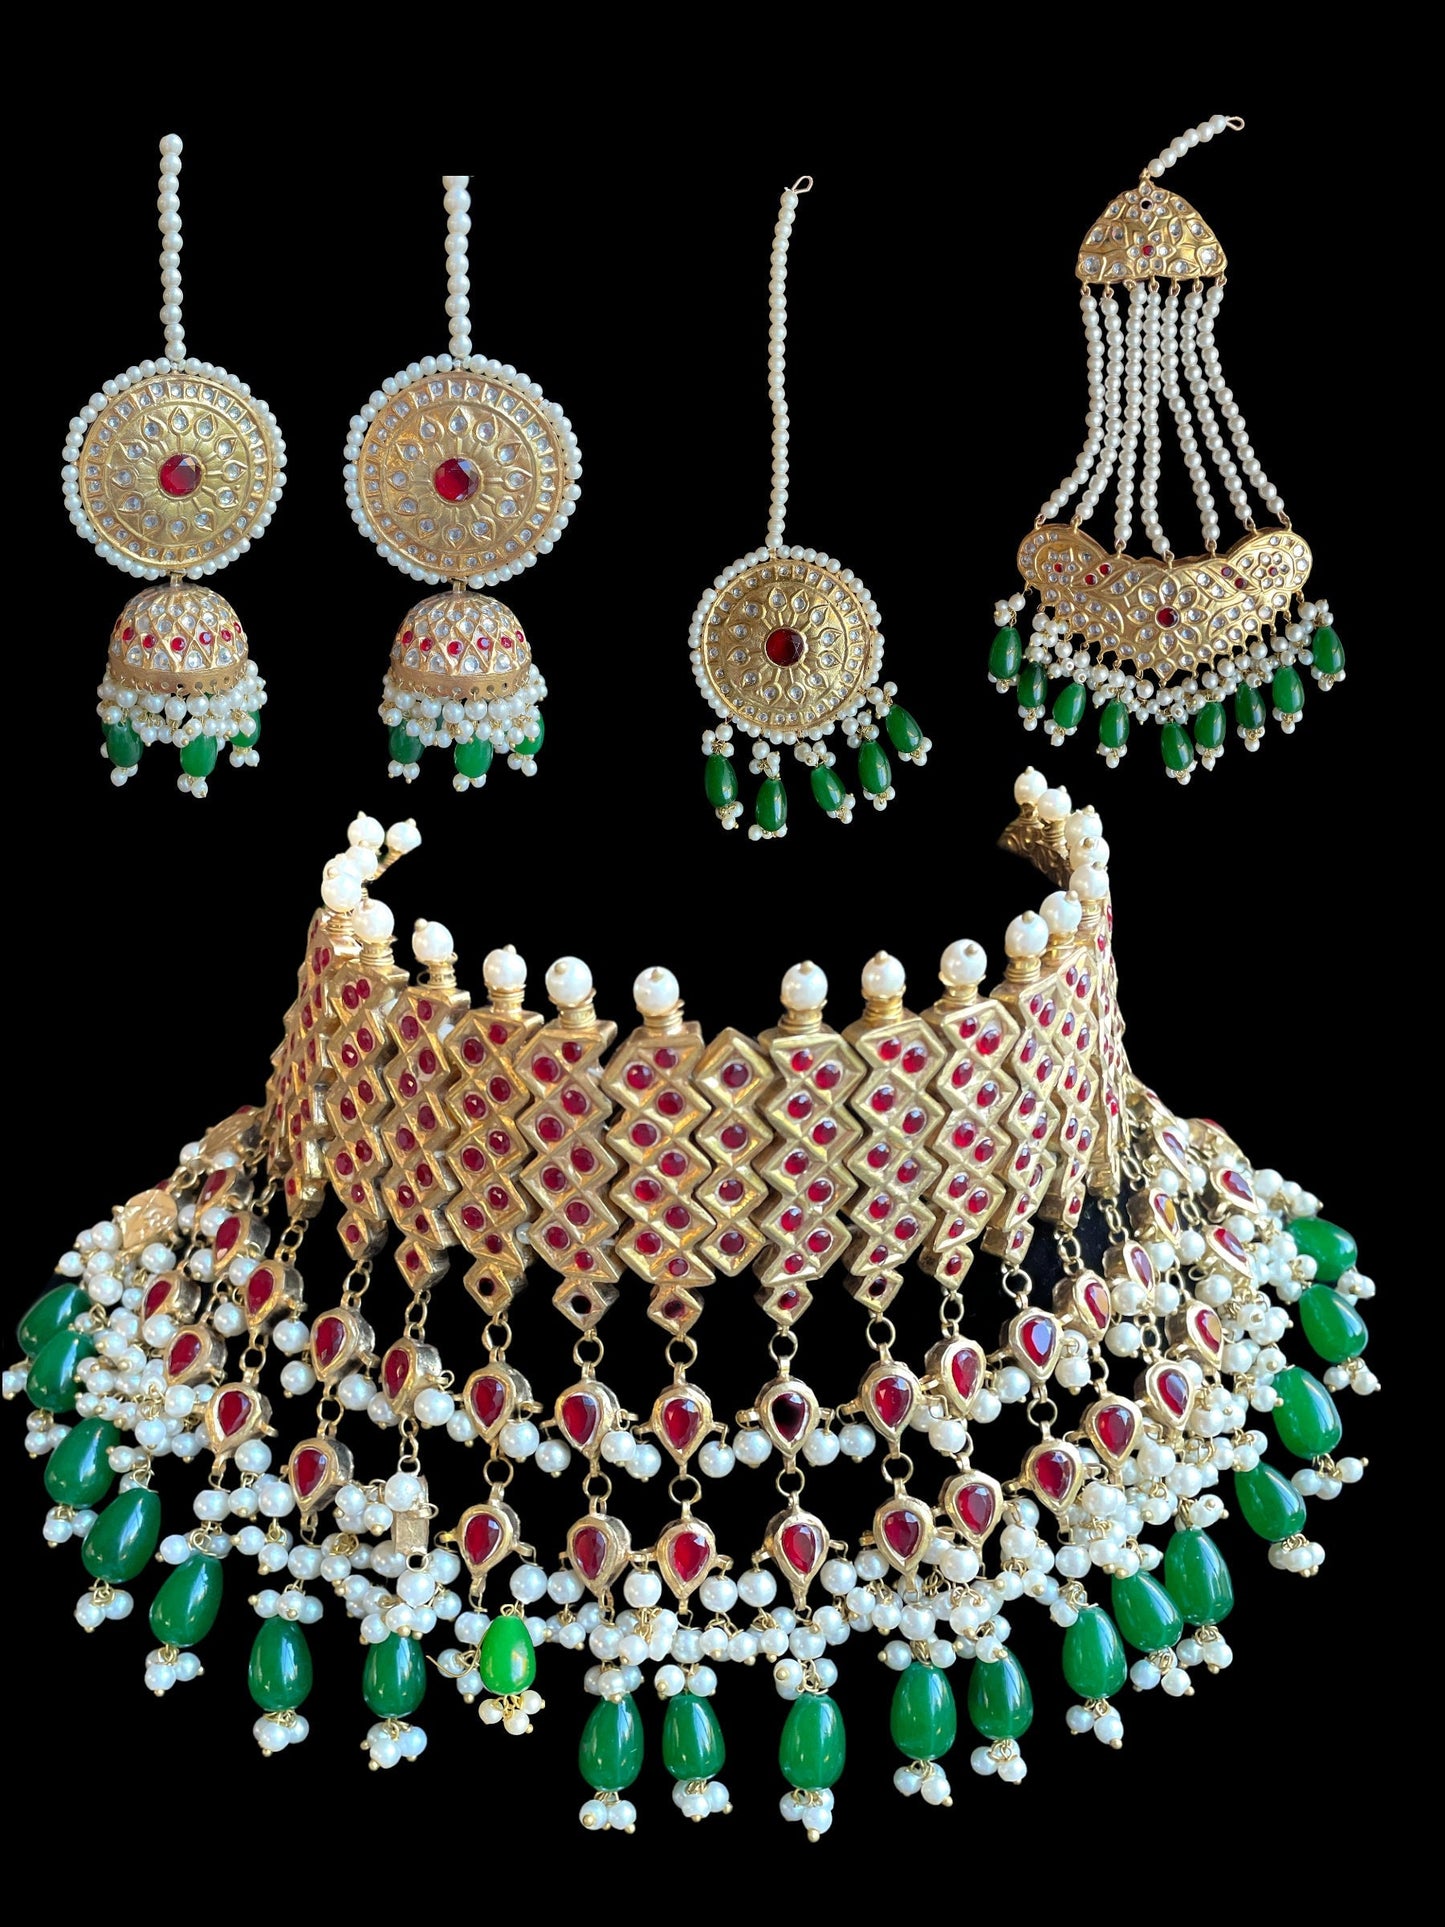 Indian Bridal red gold jewelry,gold nikkah choker,pakistani wedding jewelry,gold green choker bridal Set,Bridal Set with tikka jhumka jhumar